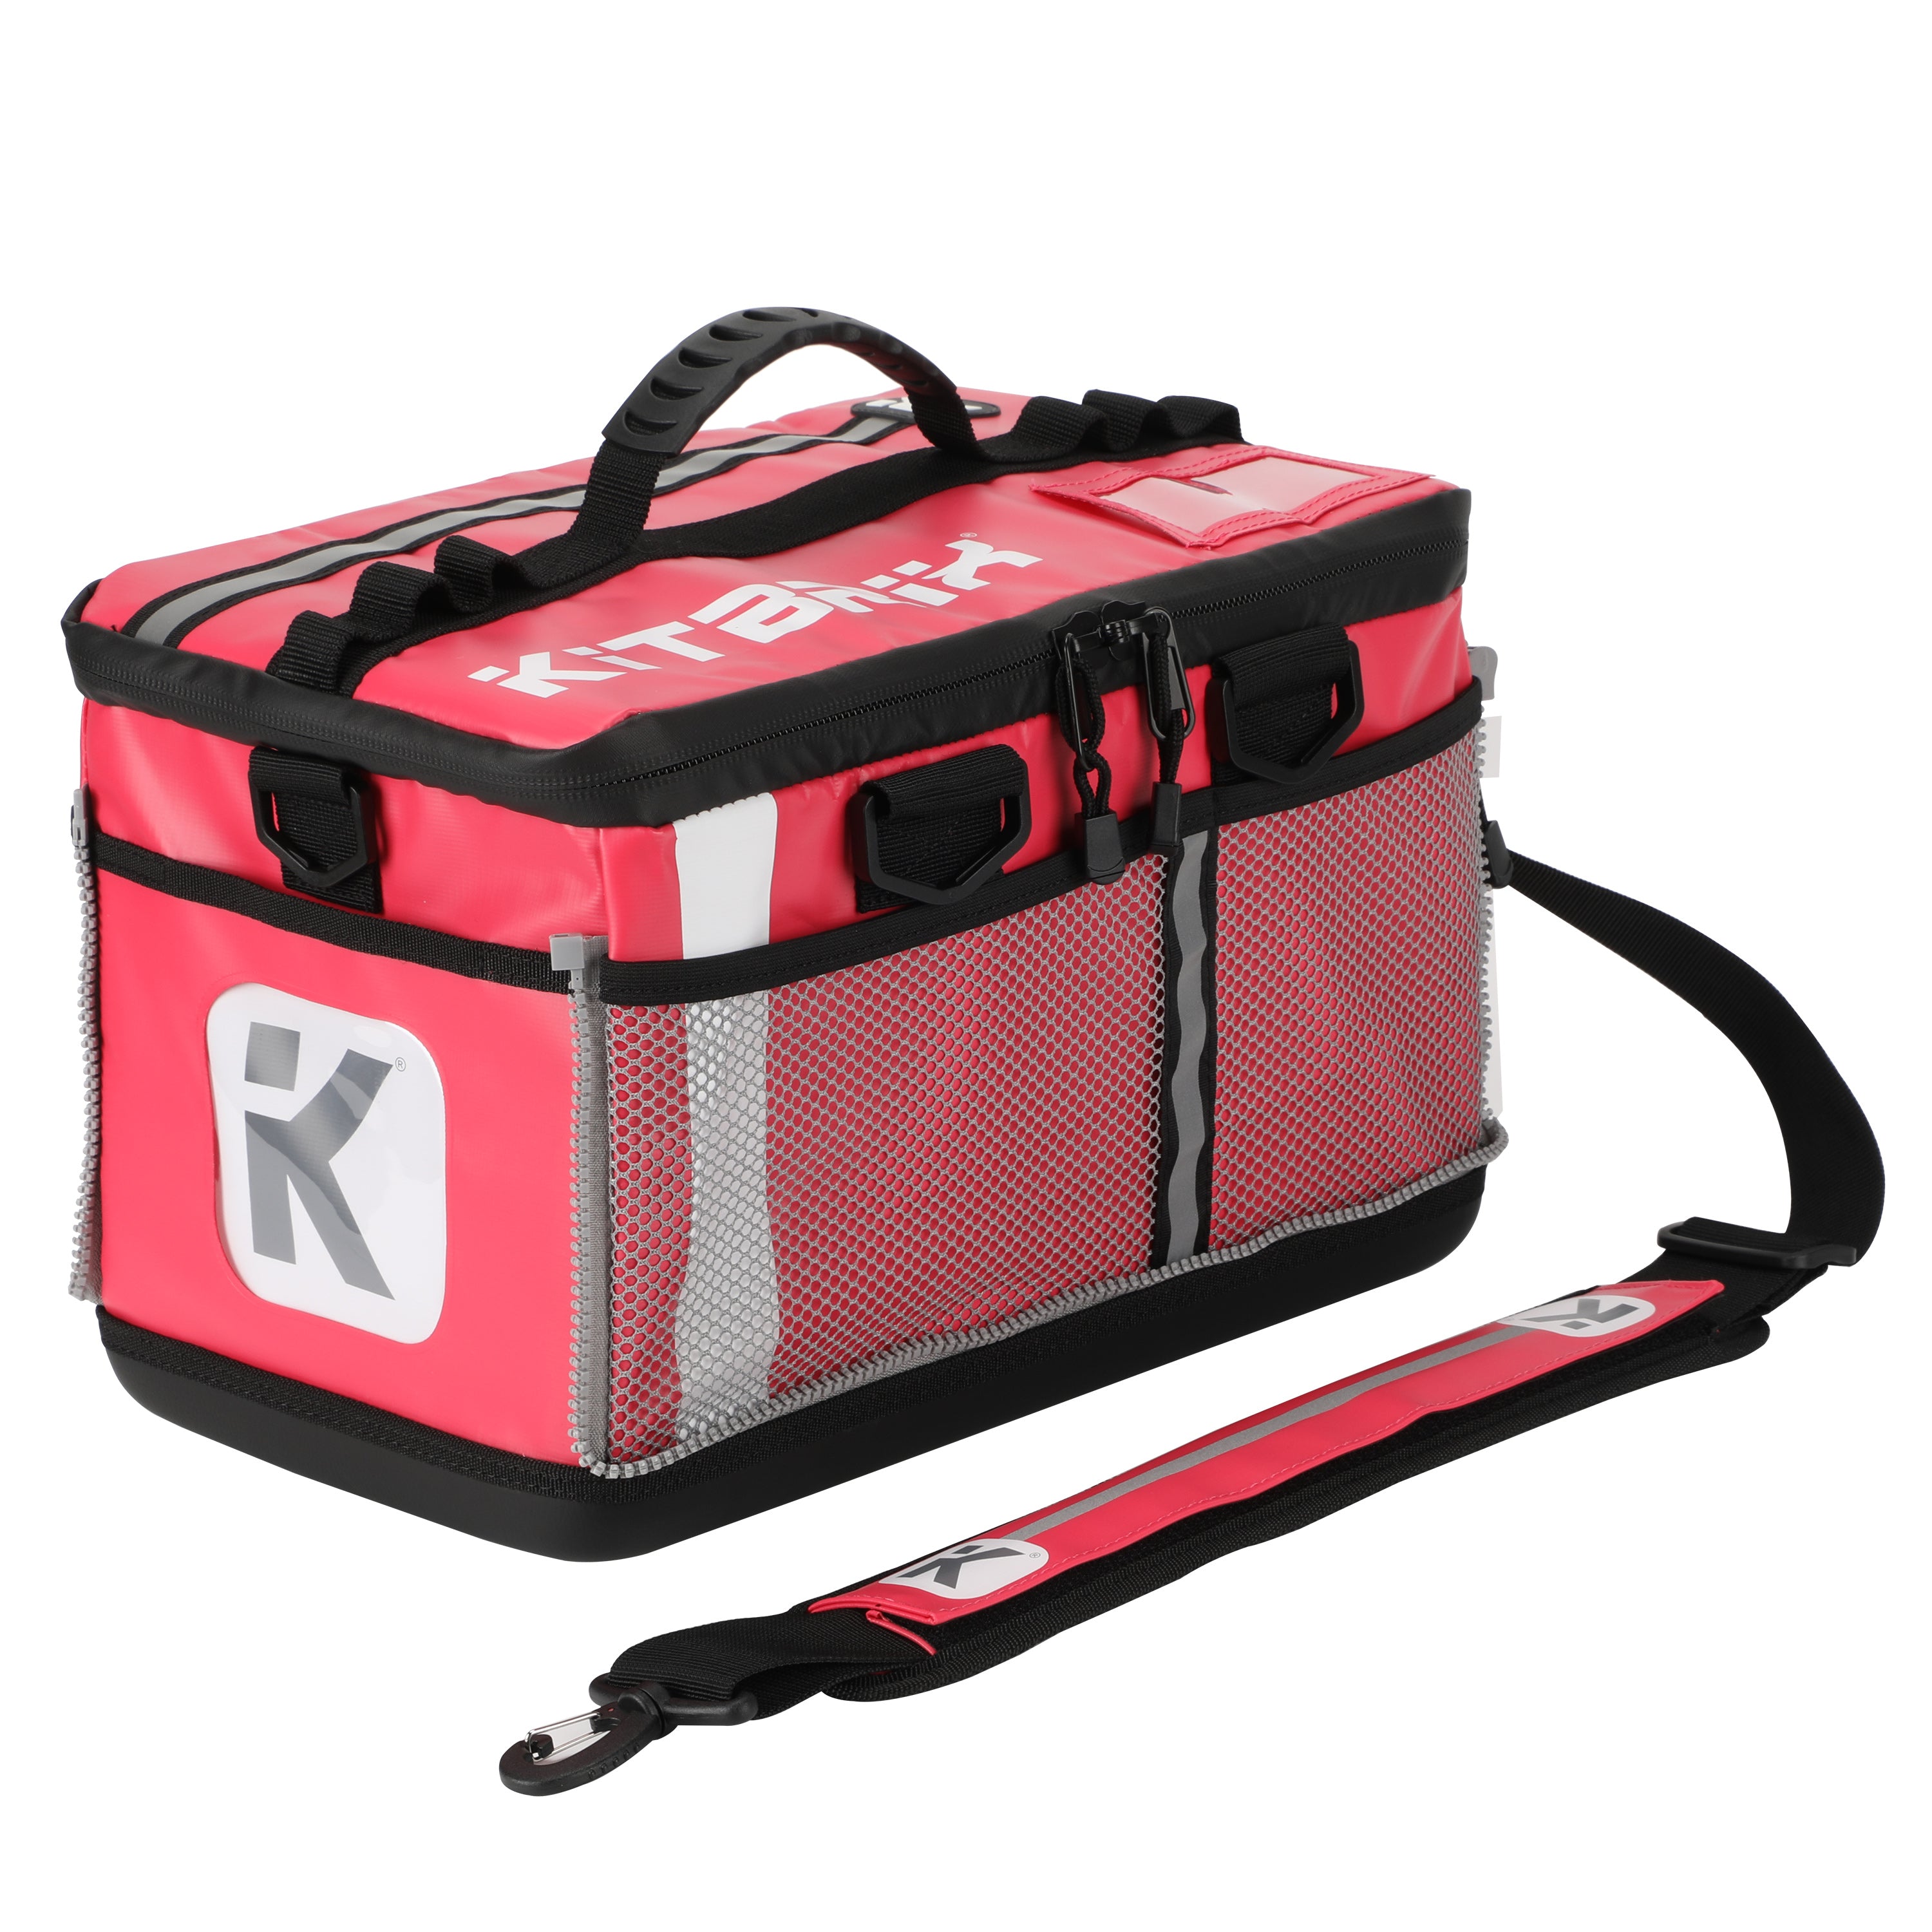 The KitBrix Bag: Get Your Kit Together